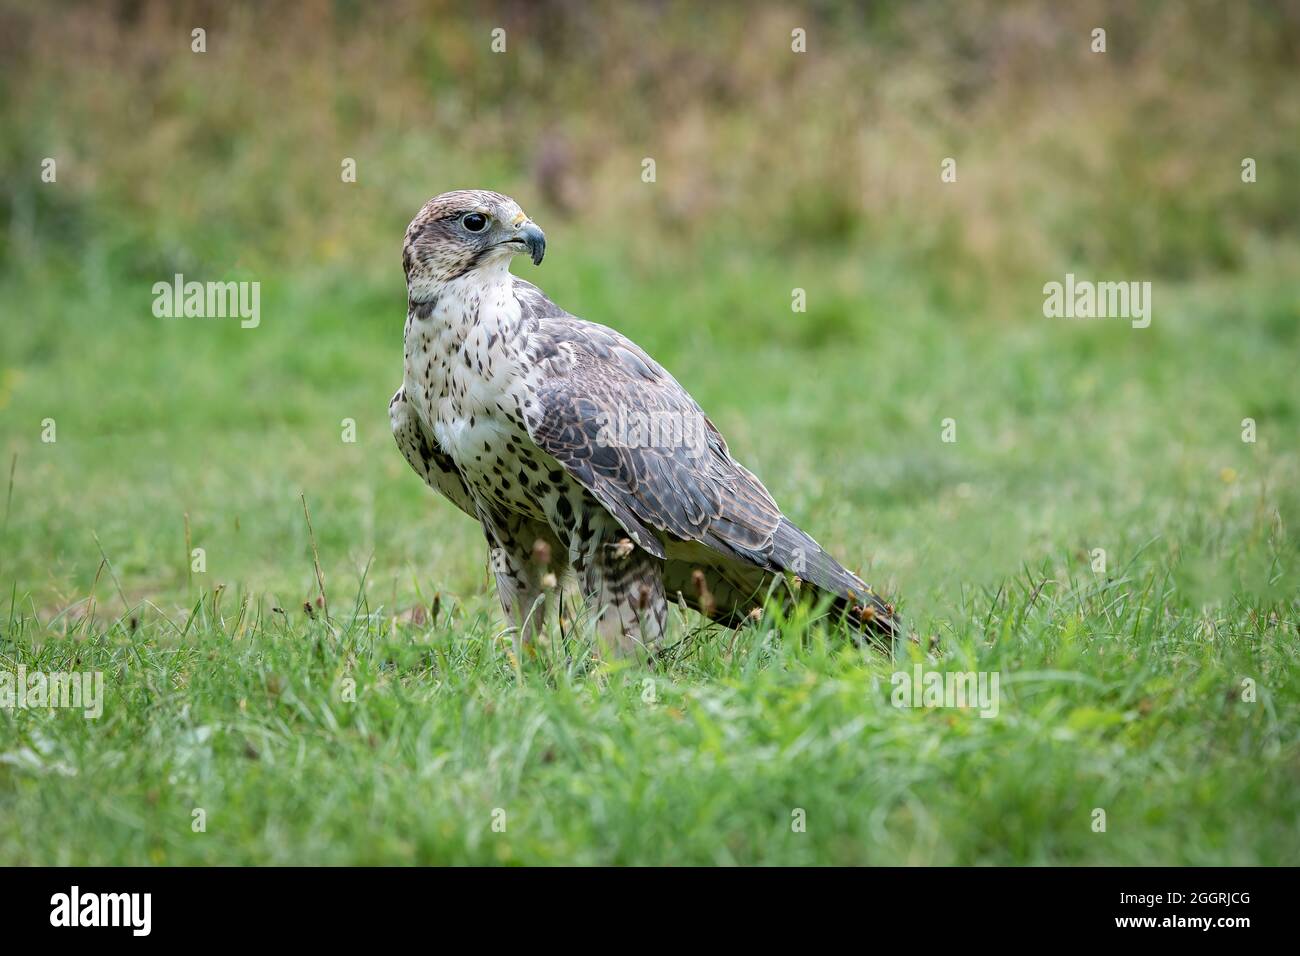 Ein versenkter Falke, der auf einem Grasfeld steht und wachsam aussieht, ist ein Ganzkörperfoto Stockfoto